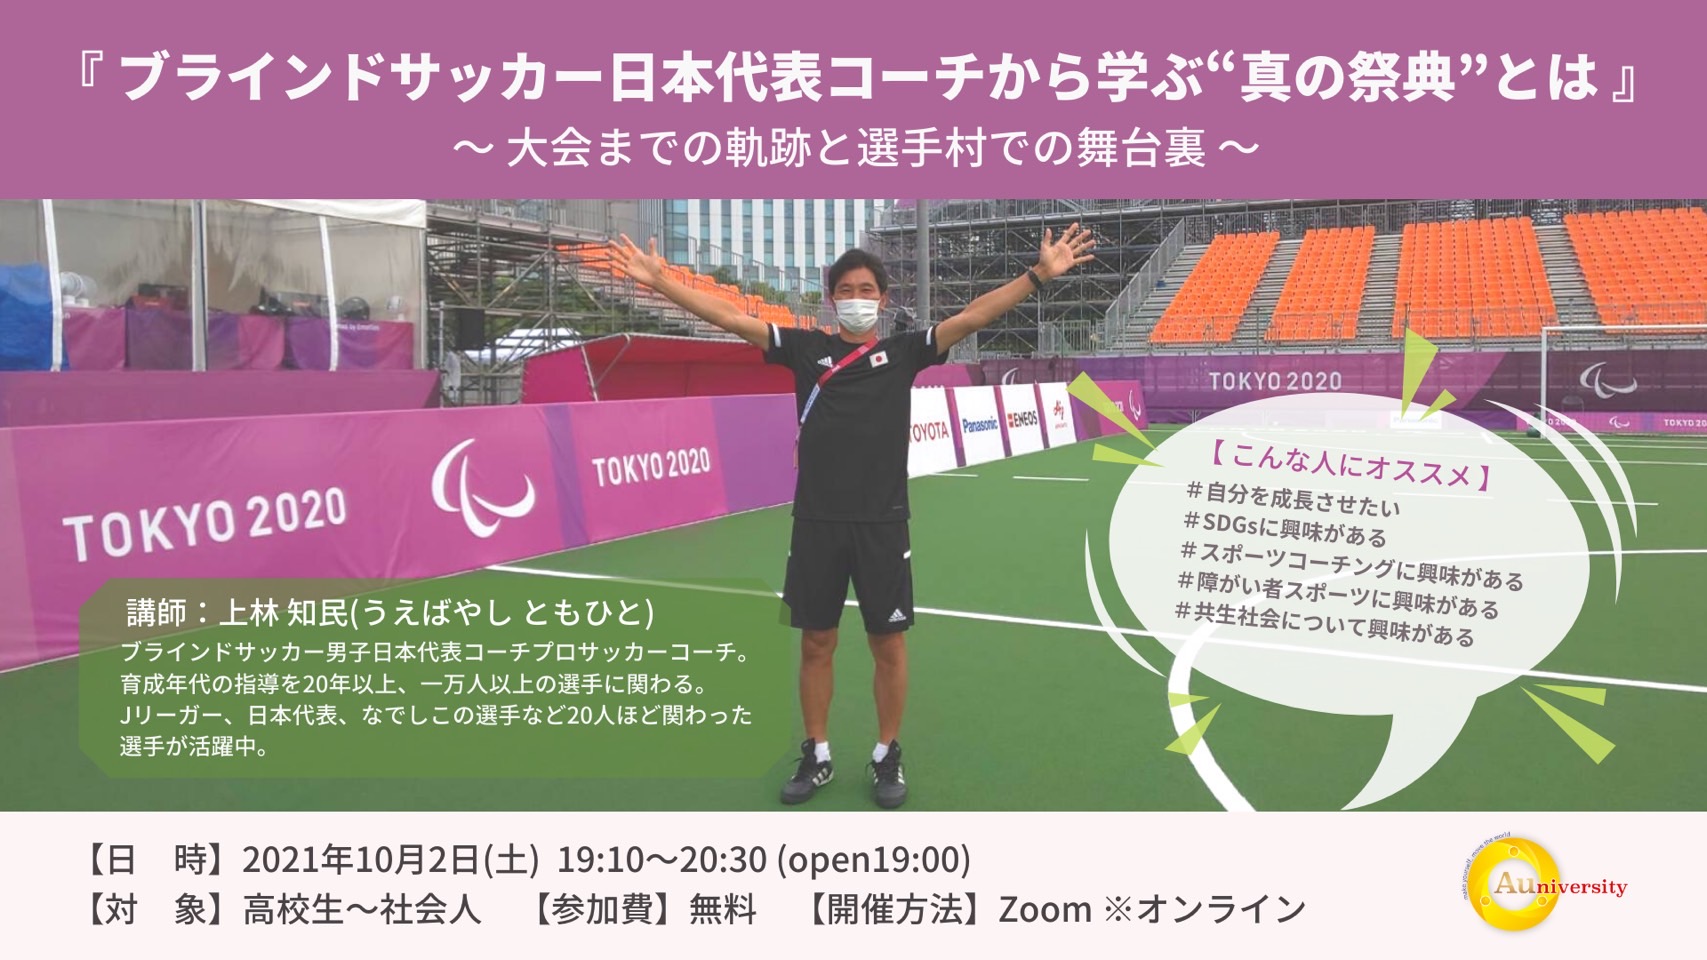 【セミナー告知】2021年10月2日『ブラインドサッカー日本代表コーチから学ぶ”真の祭典”とは』大会までの軌跡と選手村での舞台裏